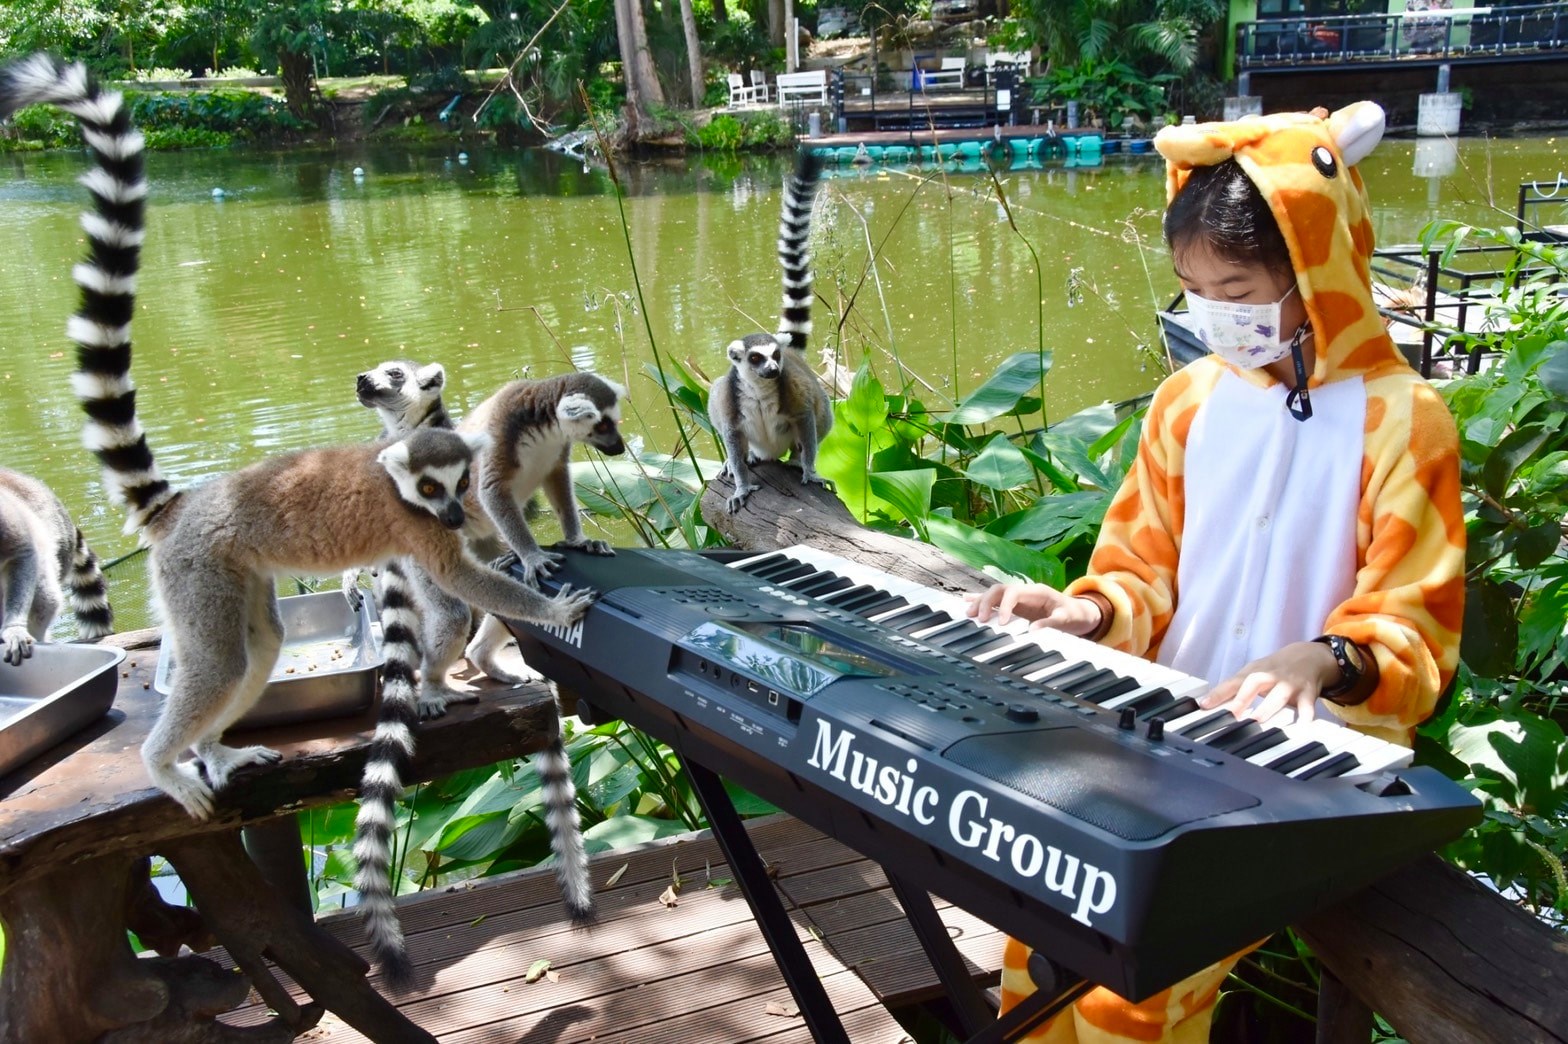 สวนสัตว์ในไทยส่งเสียงเพลงบรรเลงดังกว้างไกล สาวน้อยเล่นเปียโนเป็นเพื่อนสัตว์